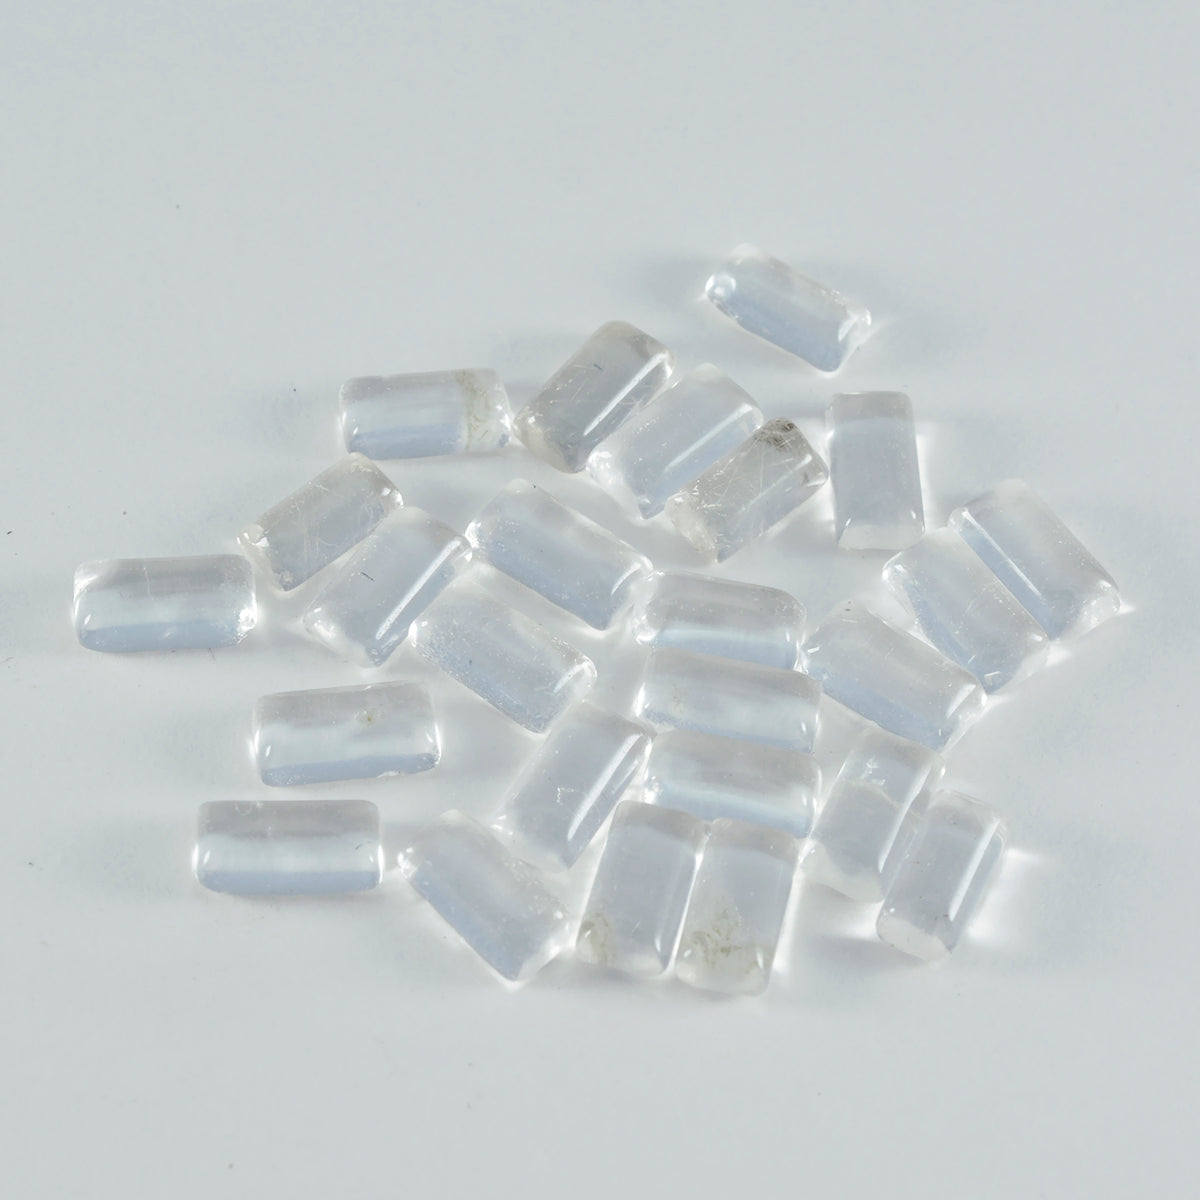 Riyogems – cabochon de quartz en cristal blanc, 3x6mm, en forme de baguette, qualité aaa, gemme en vrac, 1 pièce